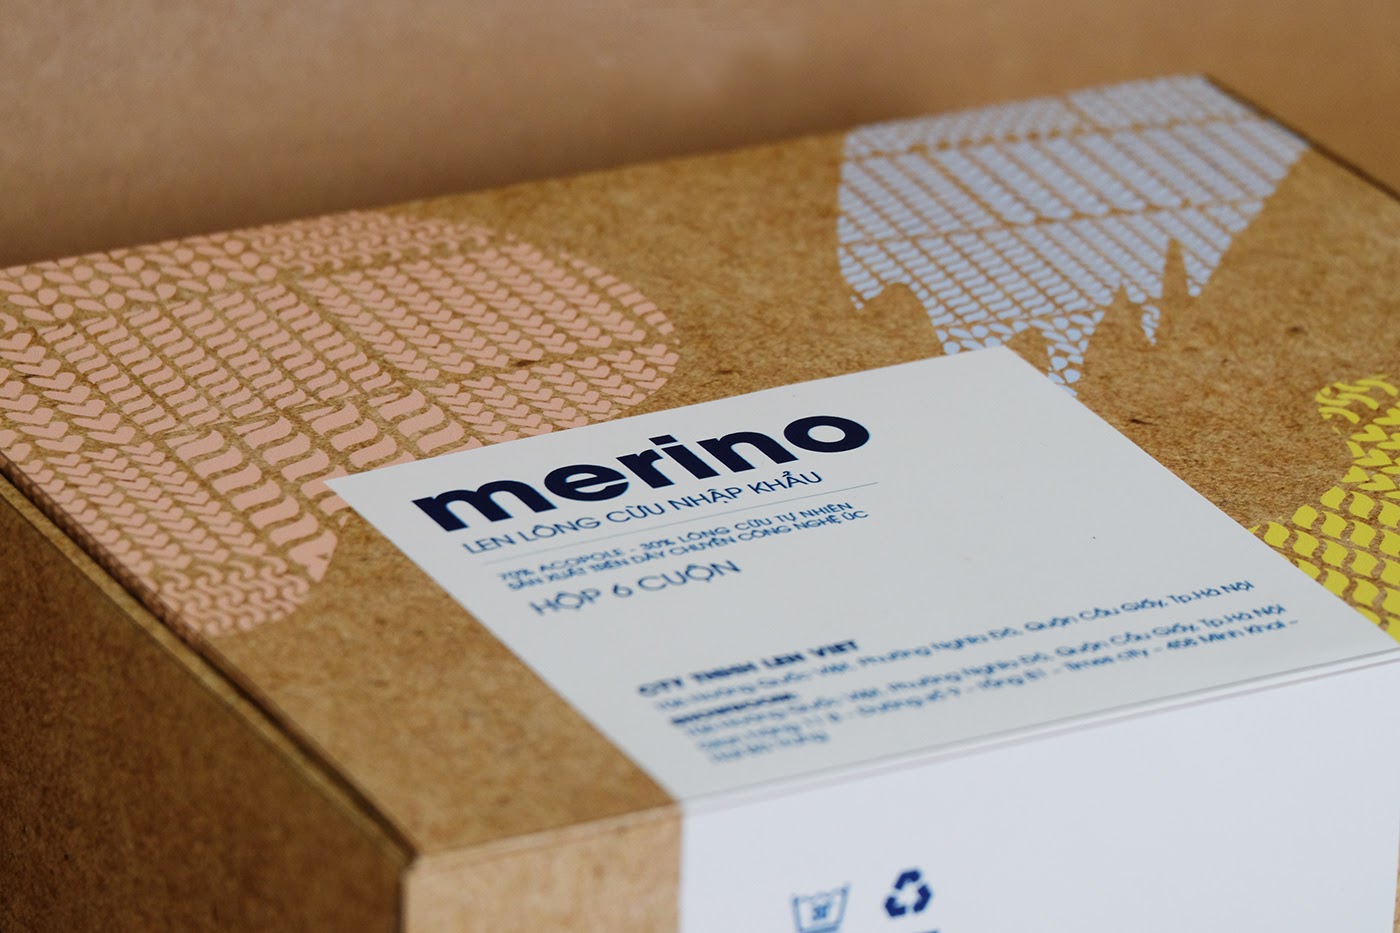 澳大利亚羊毛线品牌Merino视觉形象和包装设计